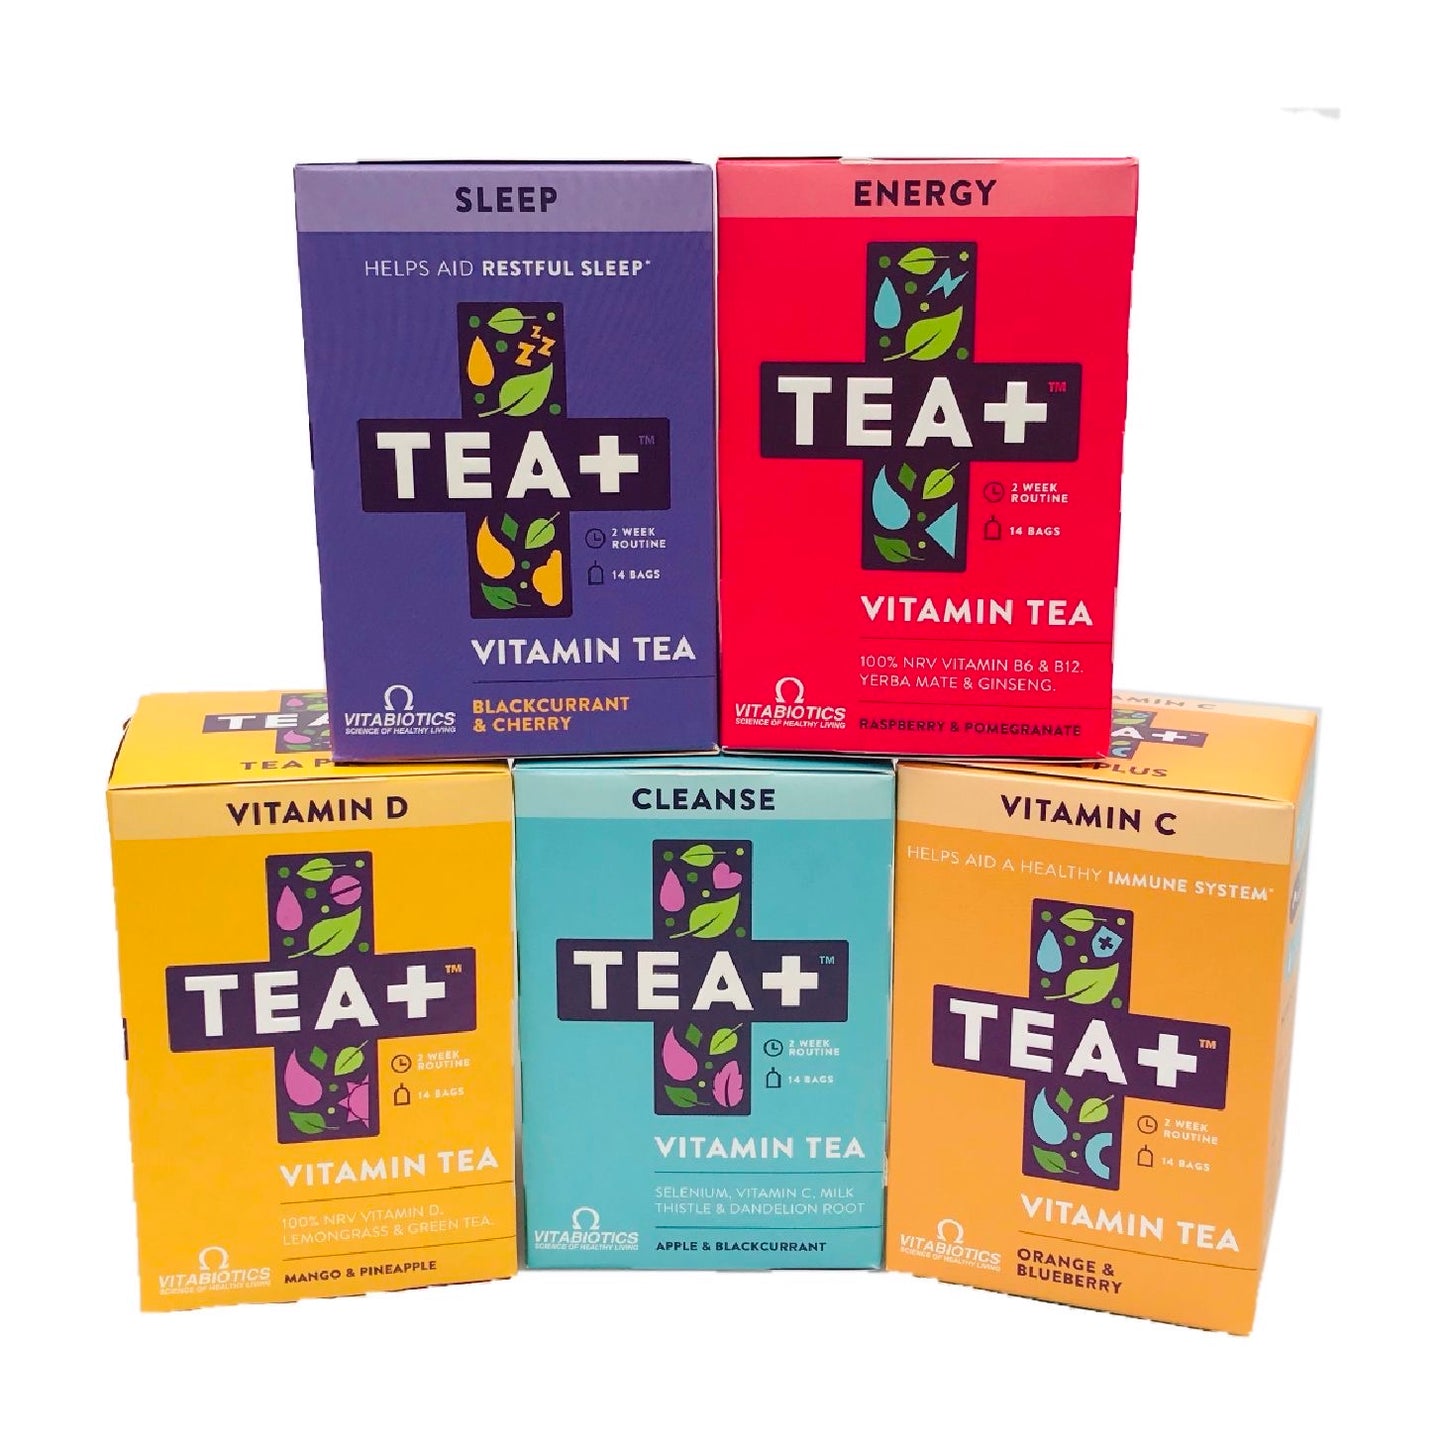 Tea+ Vitamin Infused Tea With Vitabiotics - Energy - Sweet Victory Products Ltd